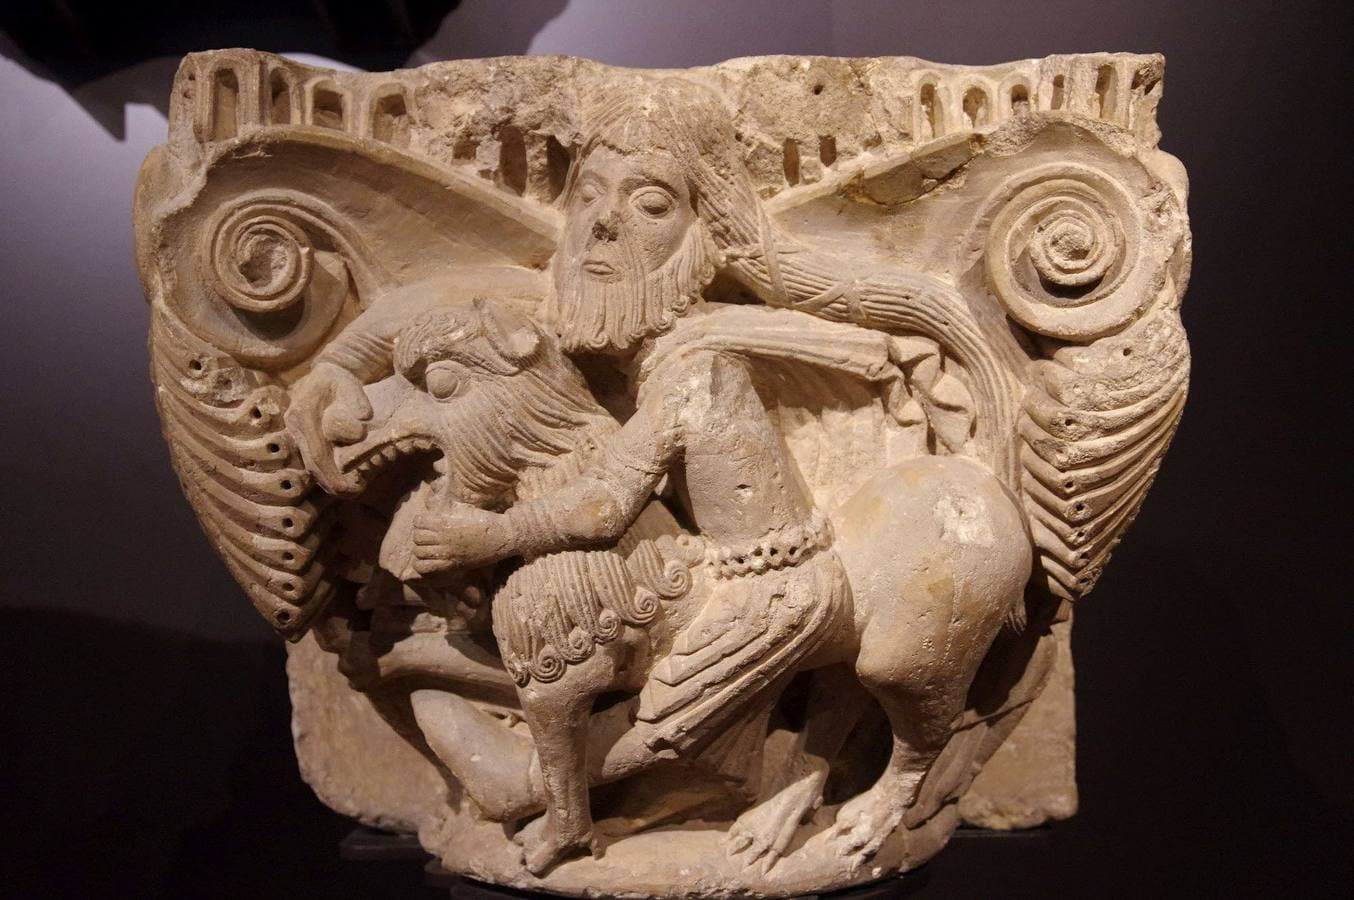 Uno de los capiteles románicos (Sansón luchando con el león) del Monasterio de Santa María la Real de Aguilar de Campoo (Palencia), que se exponen actualmente en el Museo Arqueológico Nacional